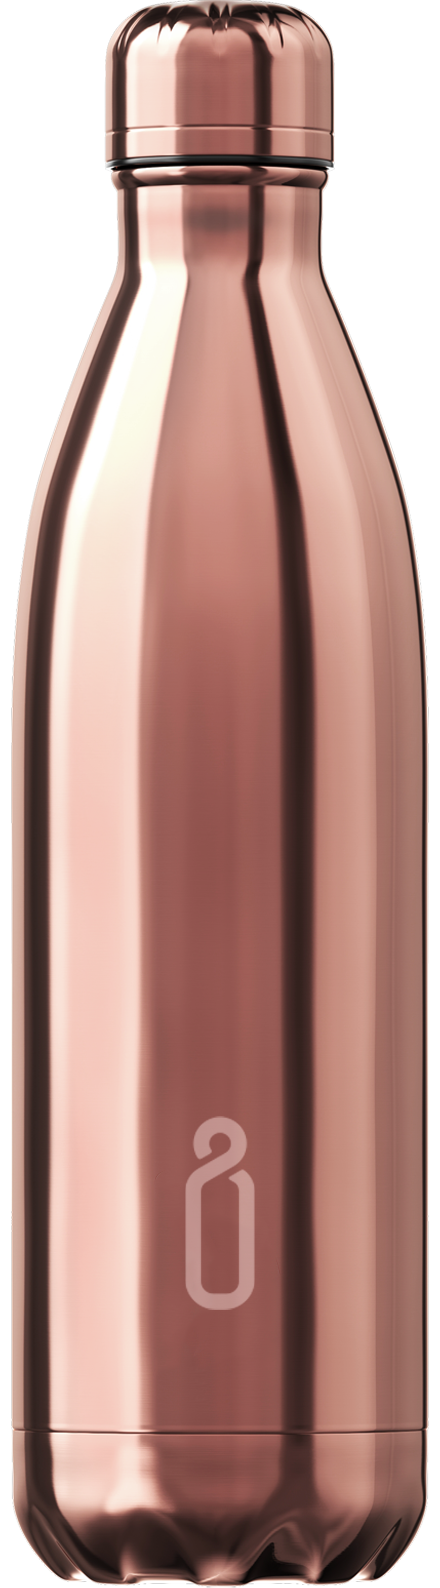 Chrome Rose Gold Reusable Water Bottle 750ml